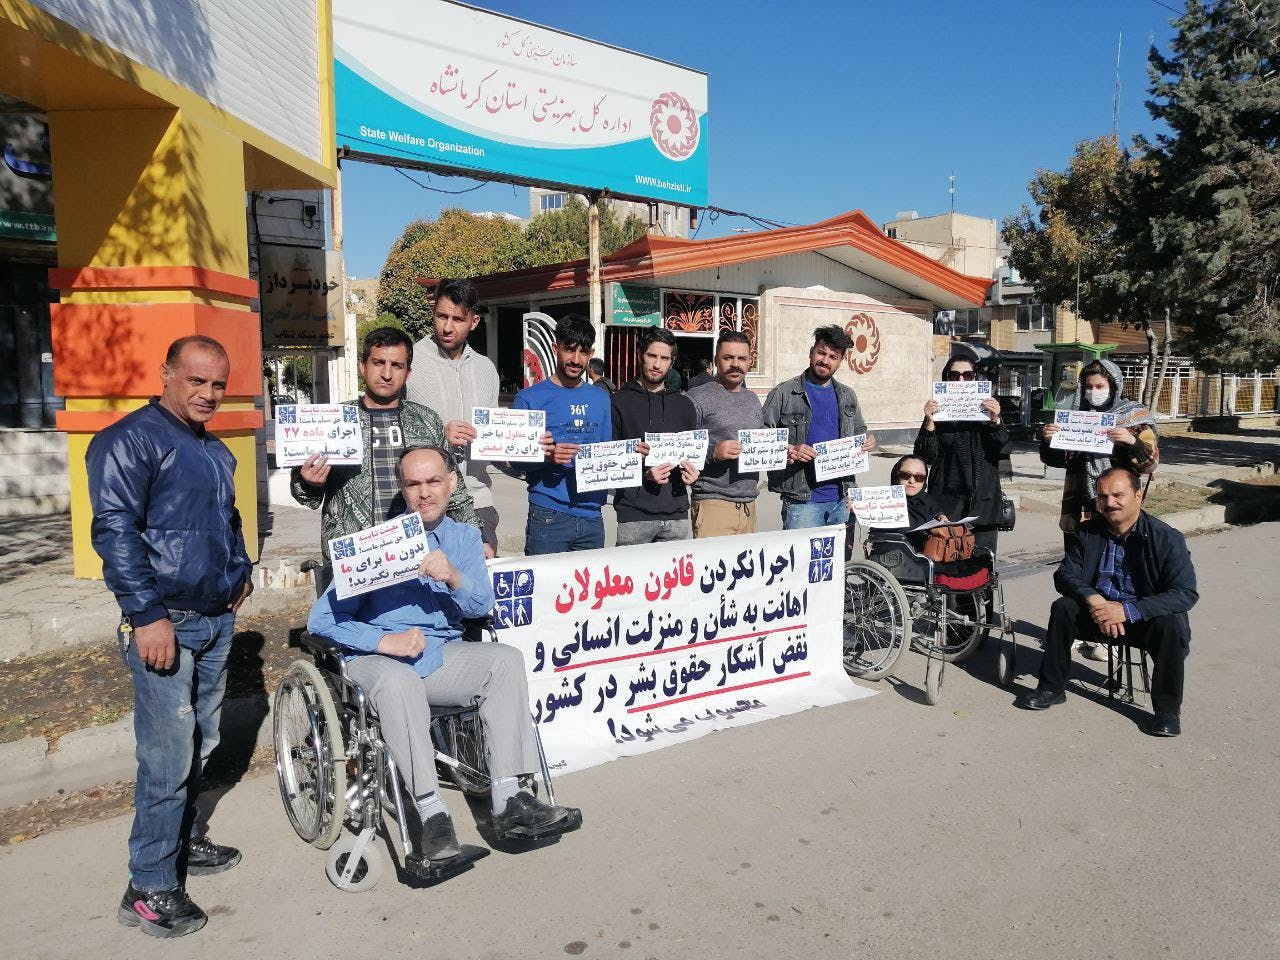 تجمع اعتراضی معلولان در شهرهای مختلف. بر روی یک بنر نوشته شده است اجرا نکردن قانون معلولان اهانت به شان و منزلت انسانی و نقض آشکار حقوق بشر در کشور است.